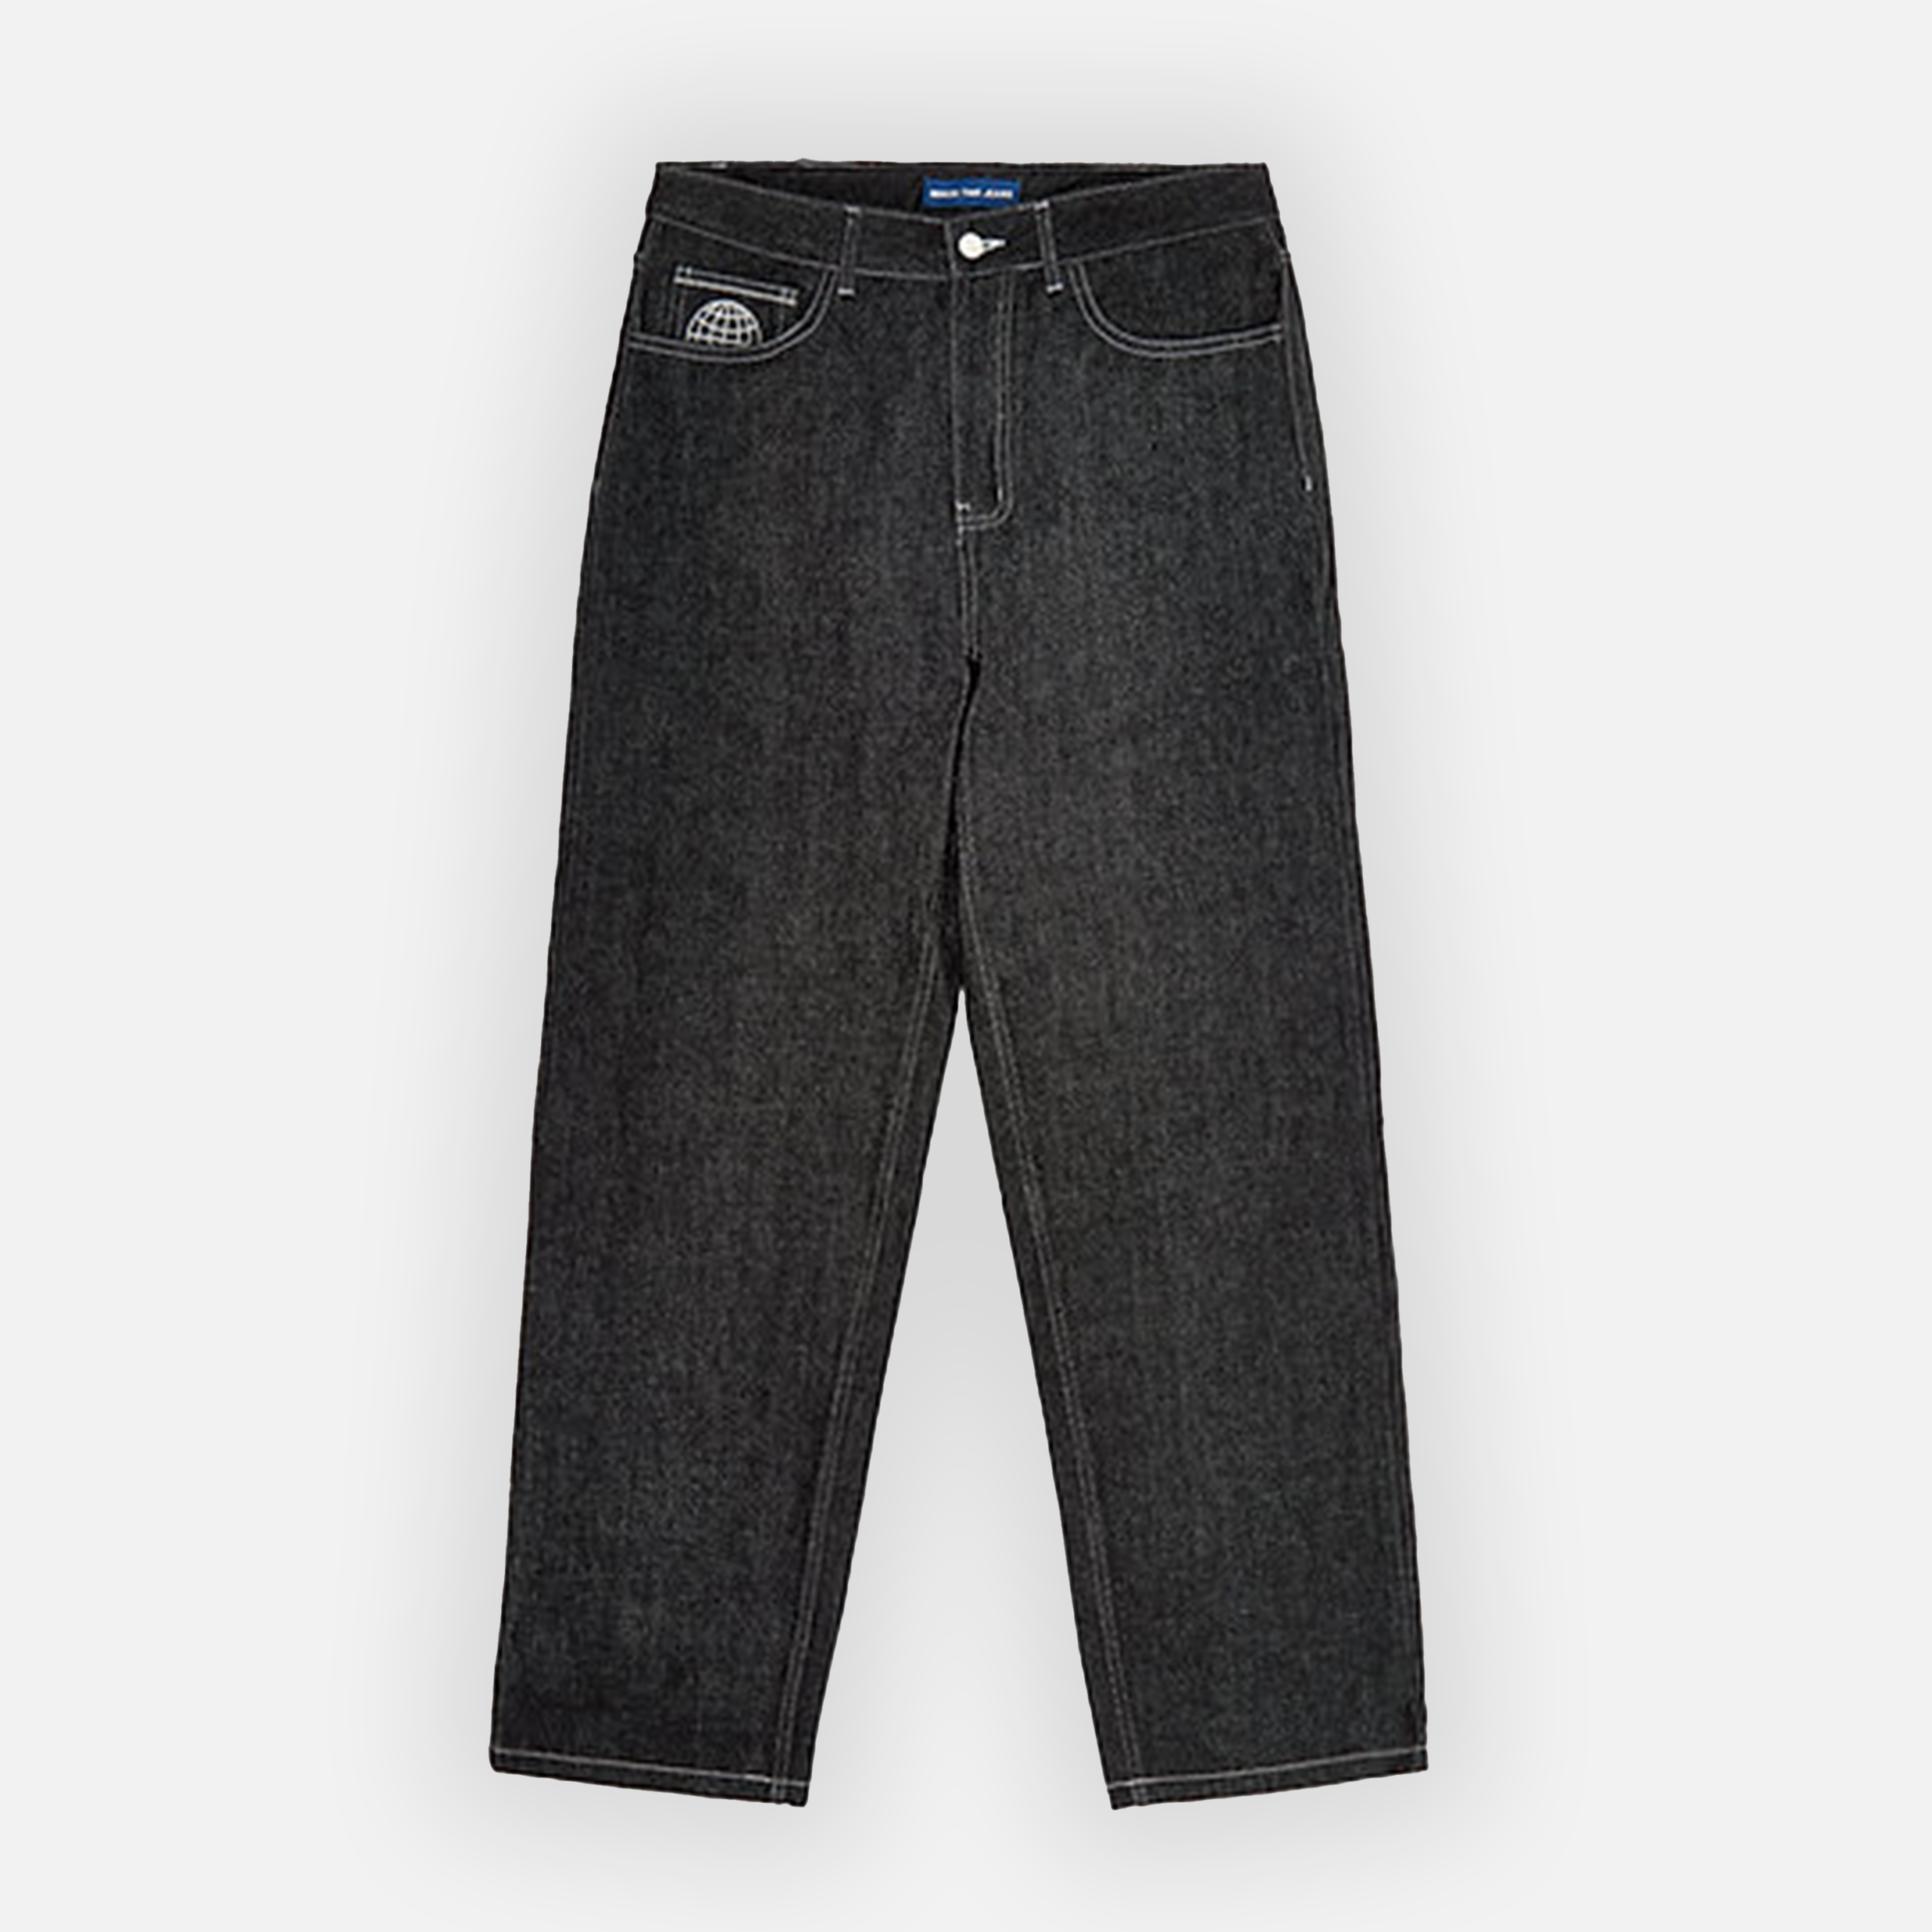 Minus-Two Multi Pocket Jeans (Grey Stitch)